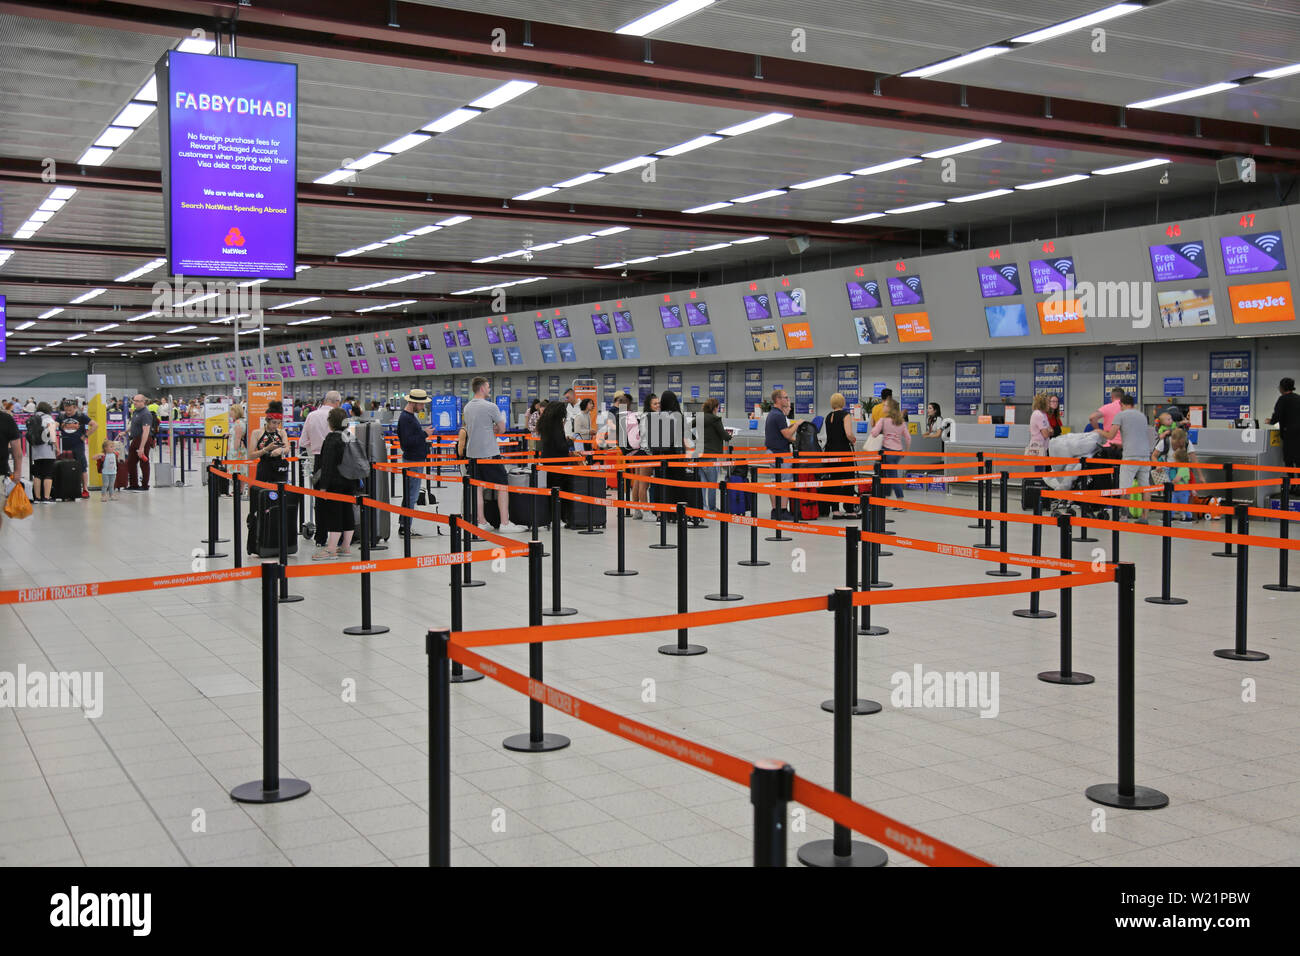 L'aéroport de Londres Luton, Royaume-Uni, salle d'enregistrement. Les passagers Easyjet la queue pour avoir de l'archipel. Le Luton salle d'enregistrement a 62 pupitres dans une seule ligne. Banque D'Images